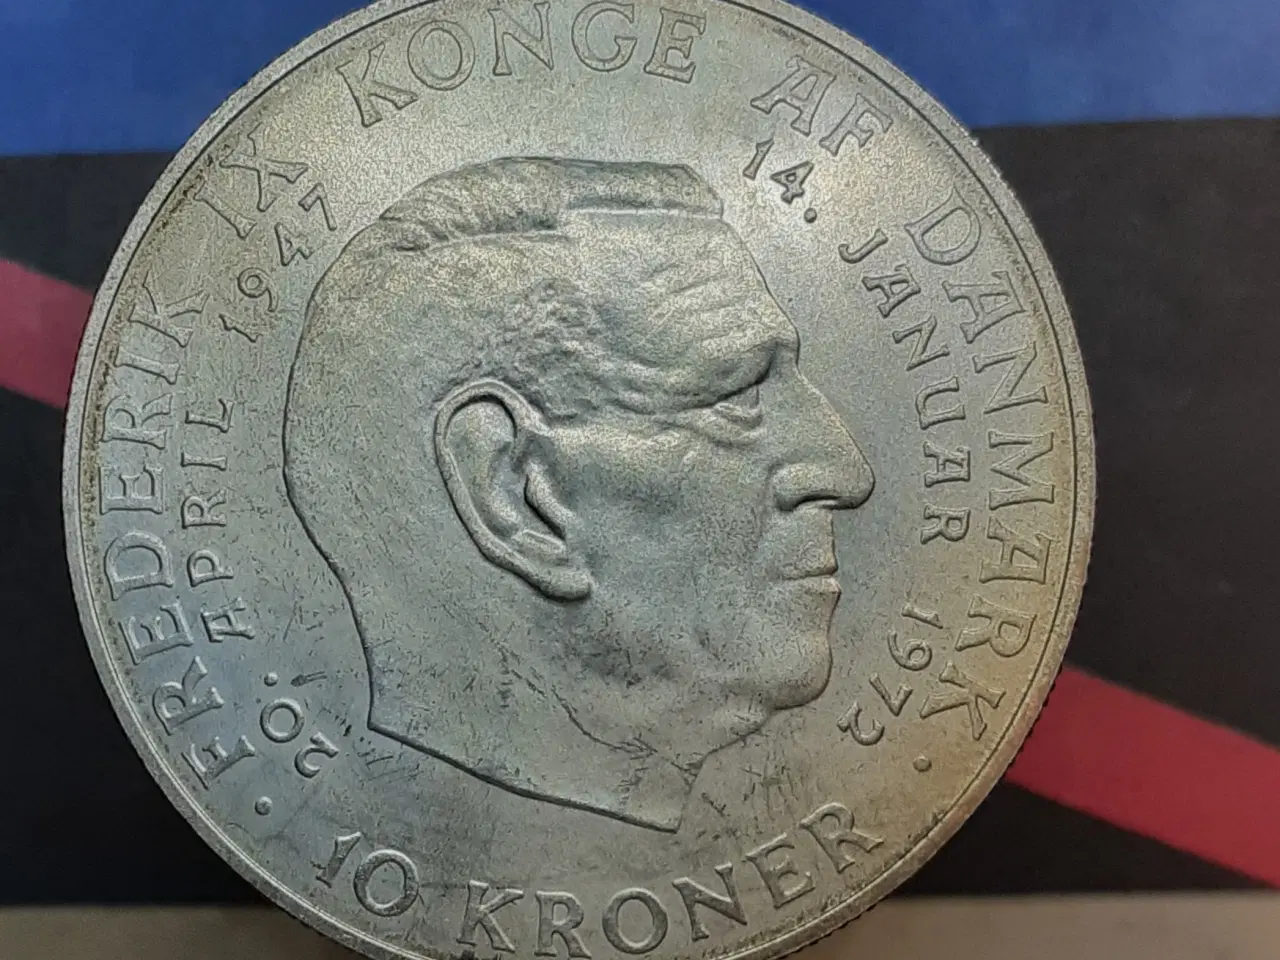 Billede 2 - 10 kr 1972 erindringsmønt, sølv